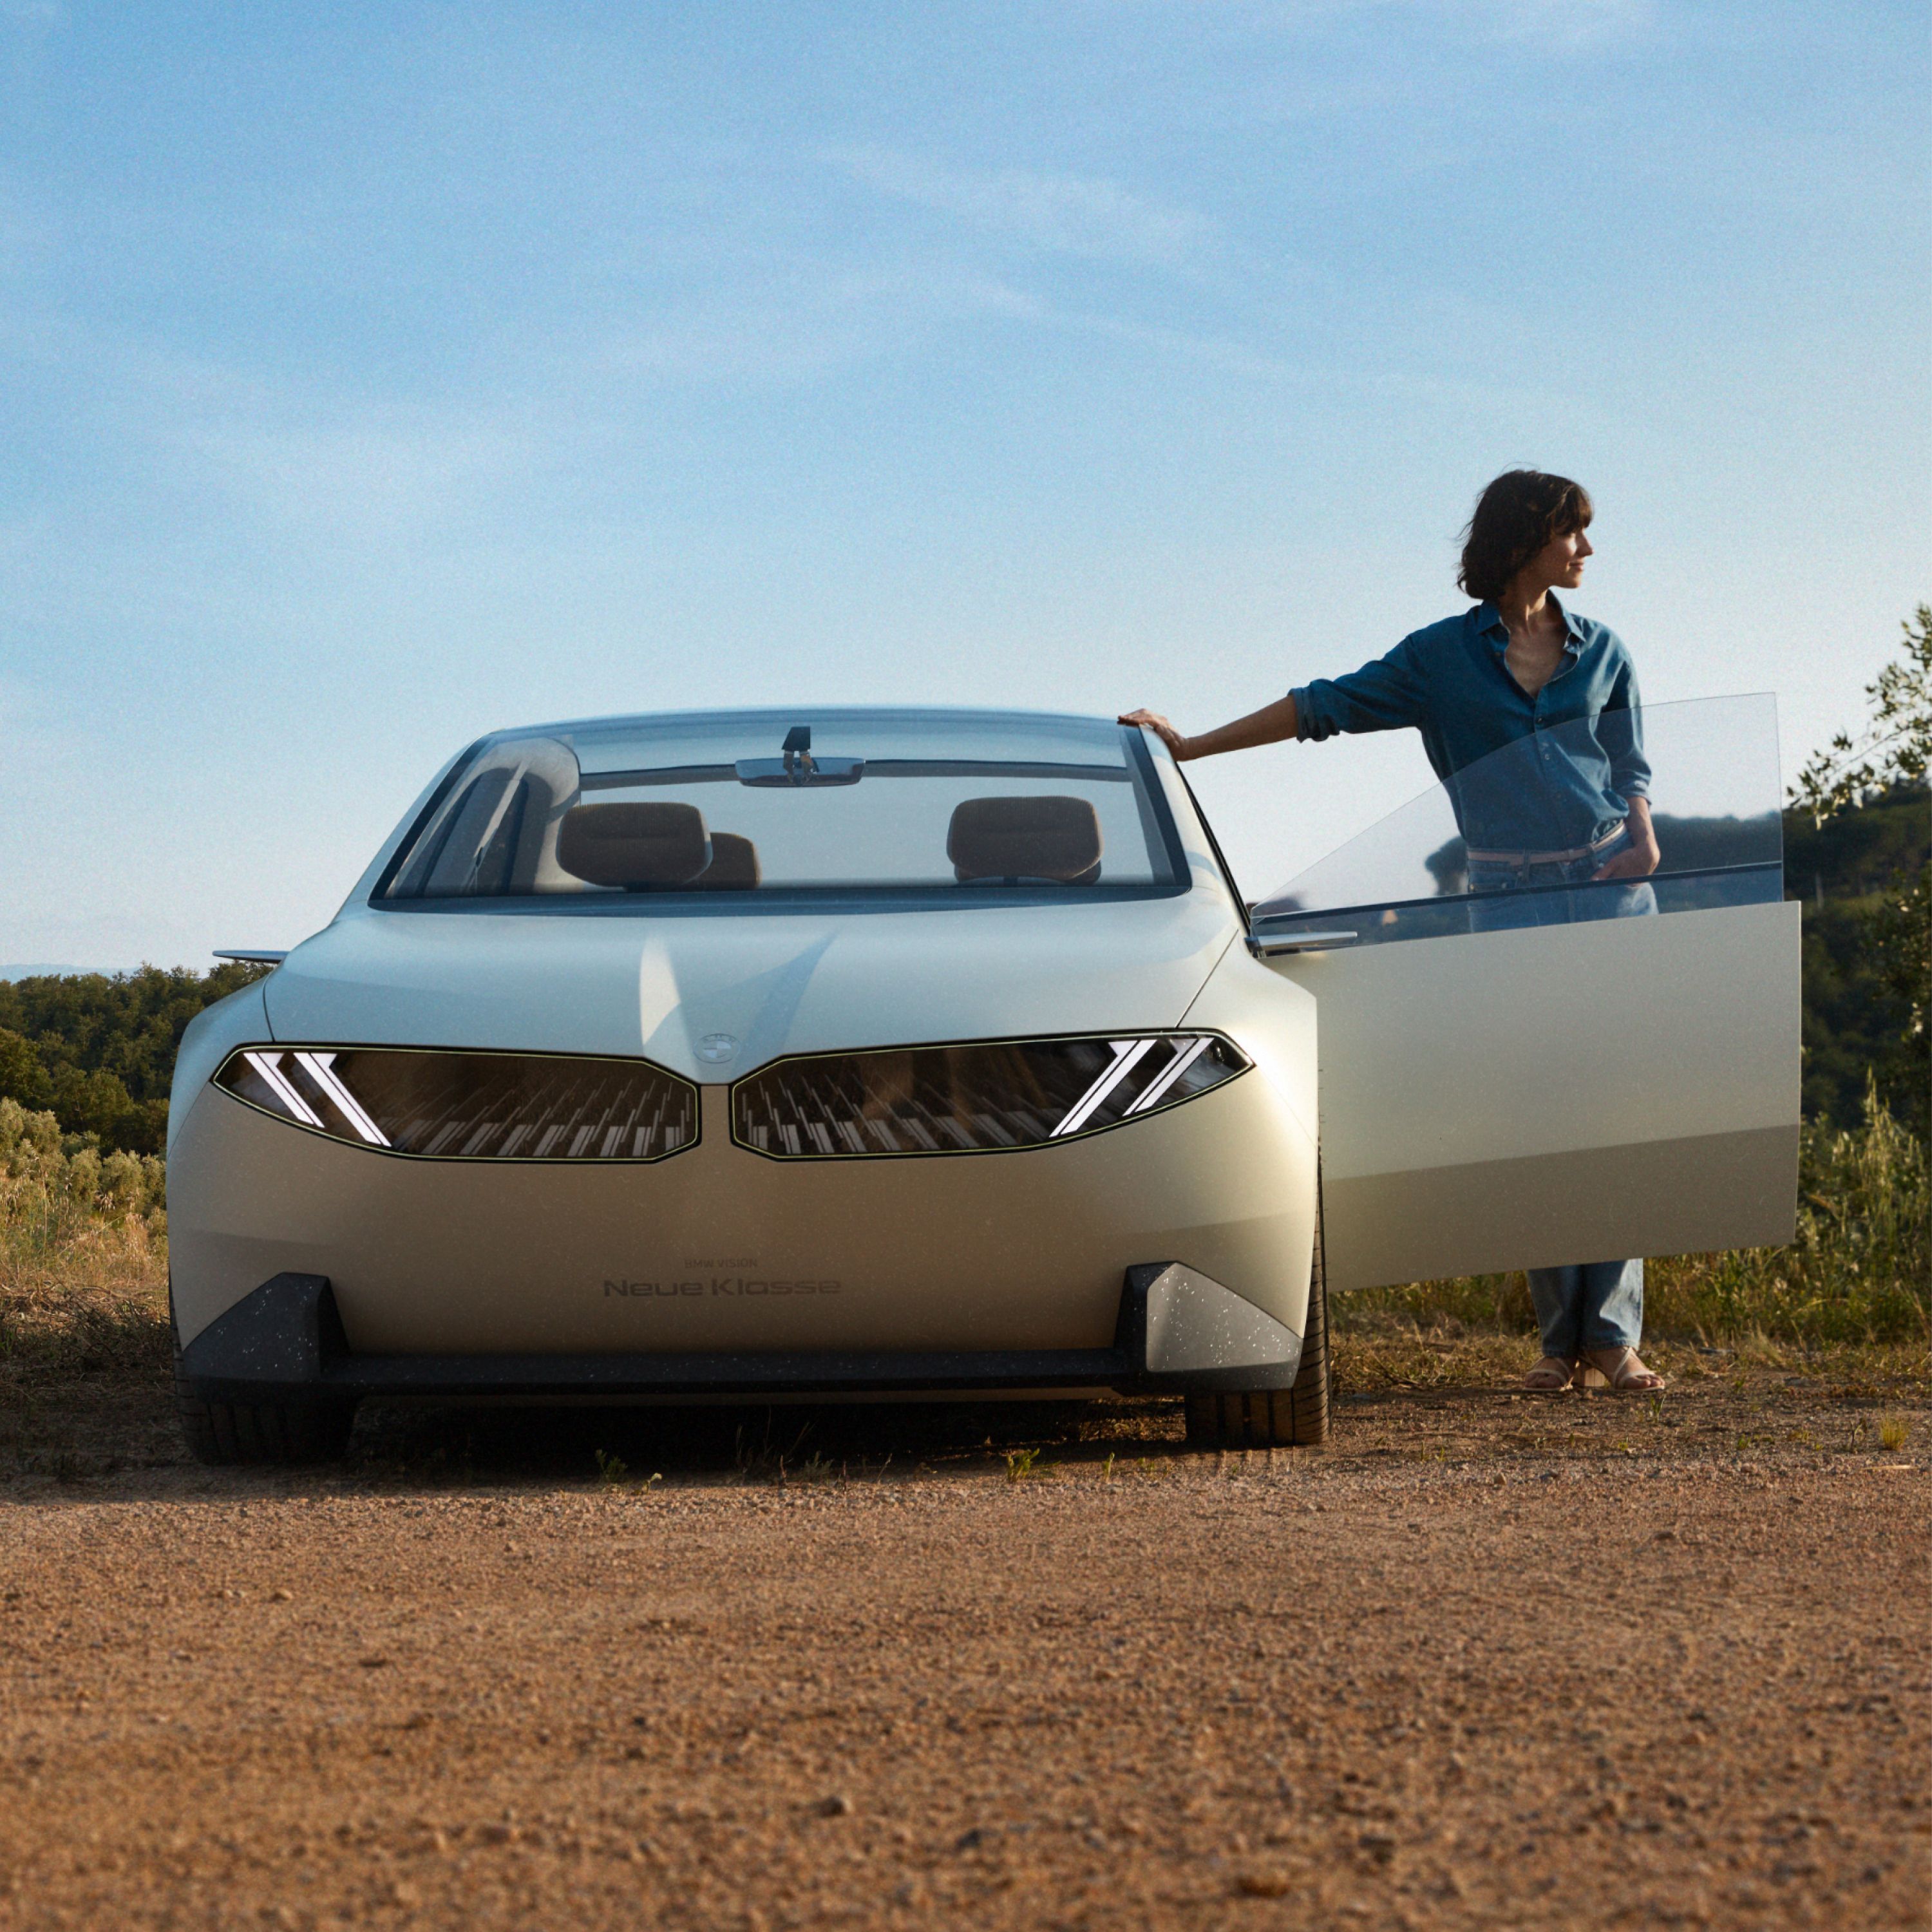 BMW Vision Neue Klasse Concept car 2023, exterior, front view, parking in desert, door open, with woman